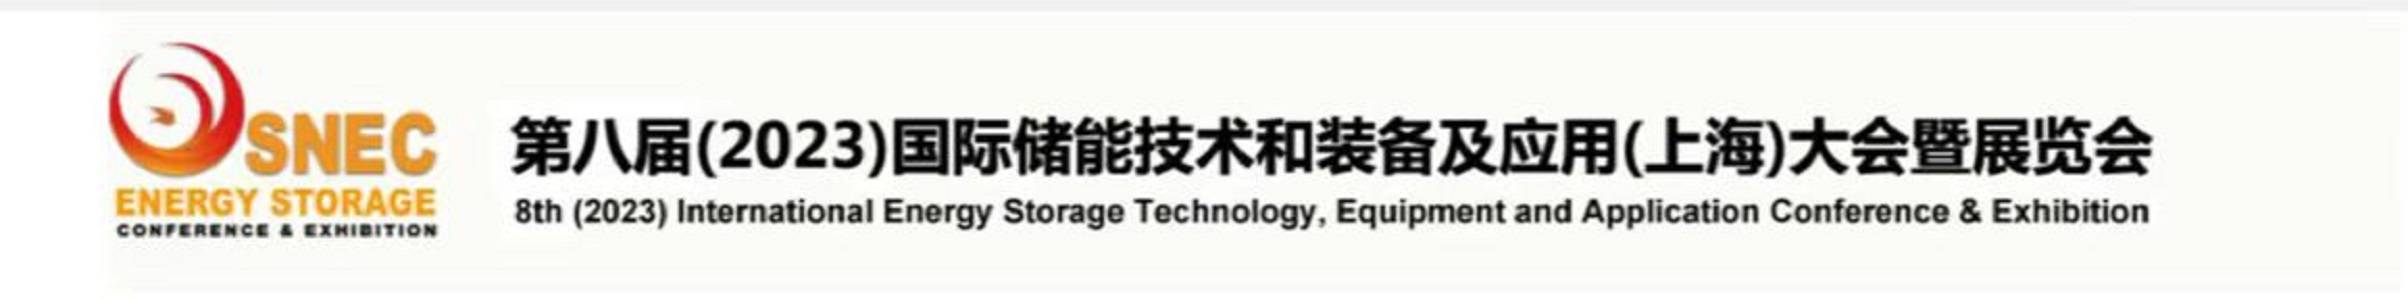 2023年储能展-组委会通知【原10月份*八届SNEC上海储能展将在11月1-3日举办】